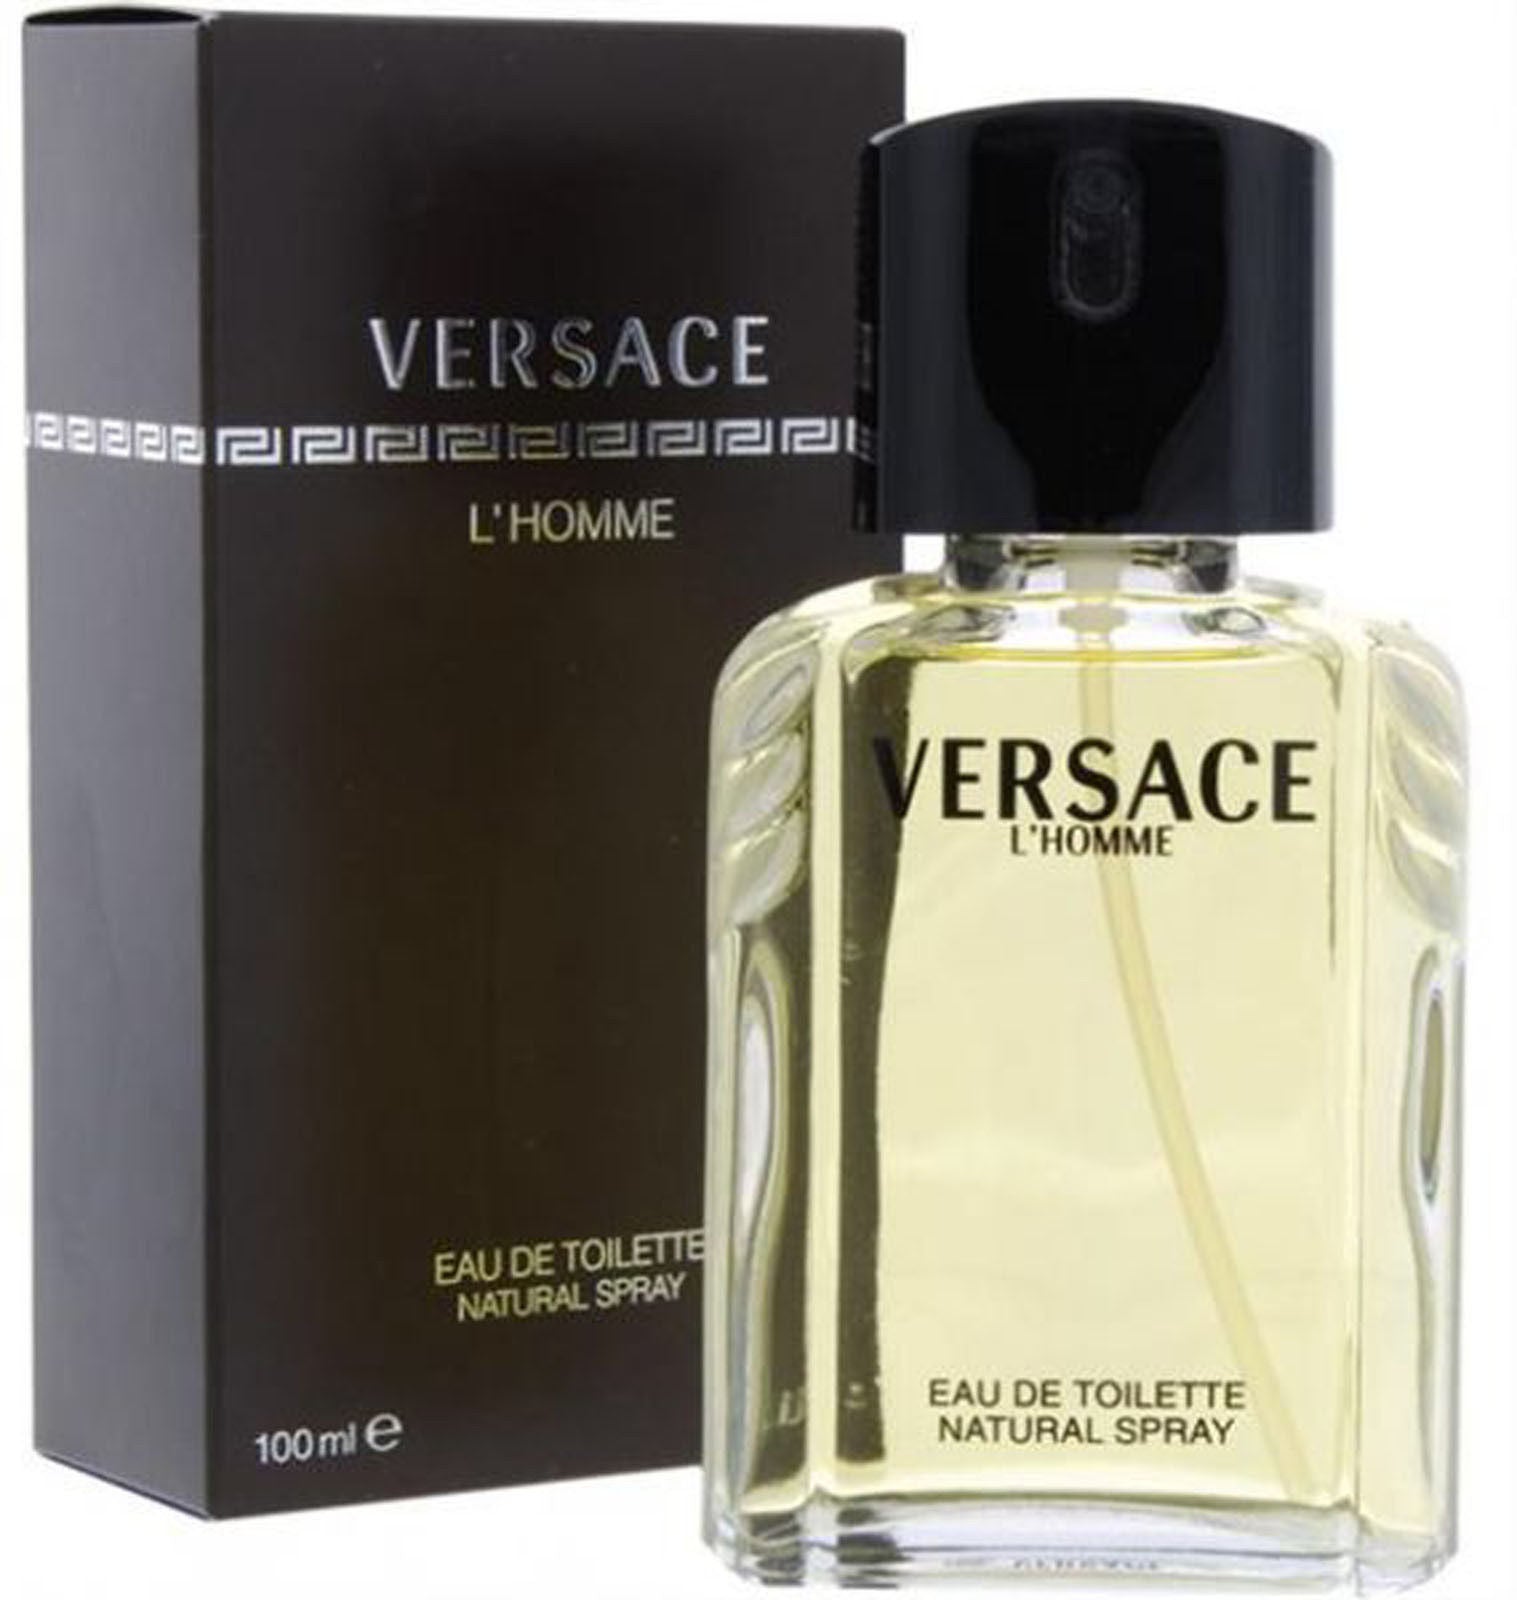 Versace L'homme Eau De Toilette 100 ml - RossoLaccaStore